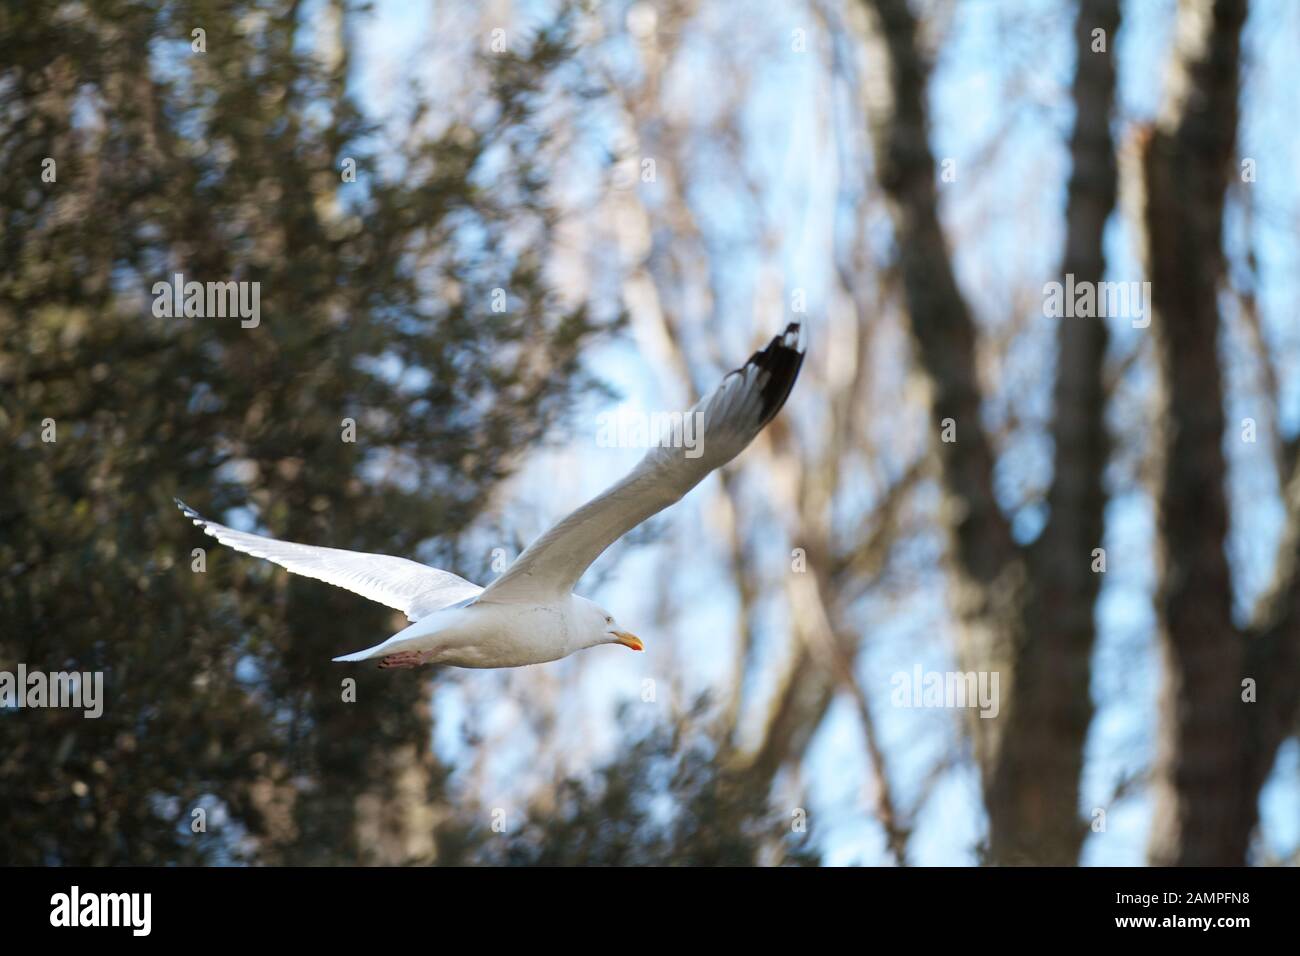 Seagull in flight. Stock Photo